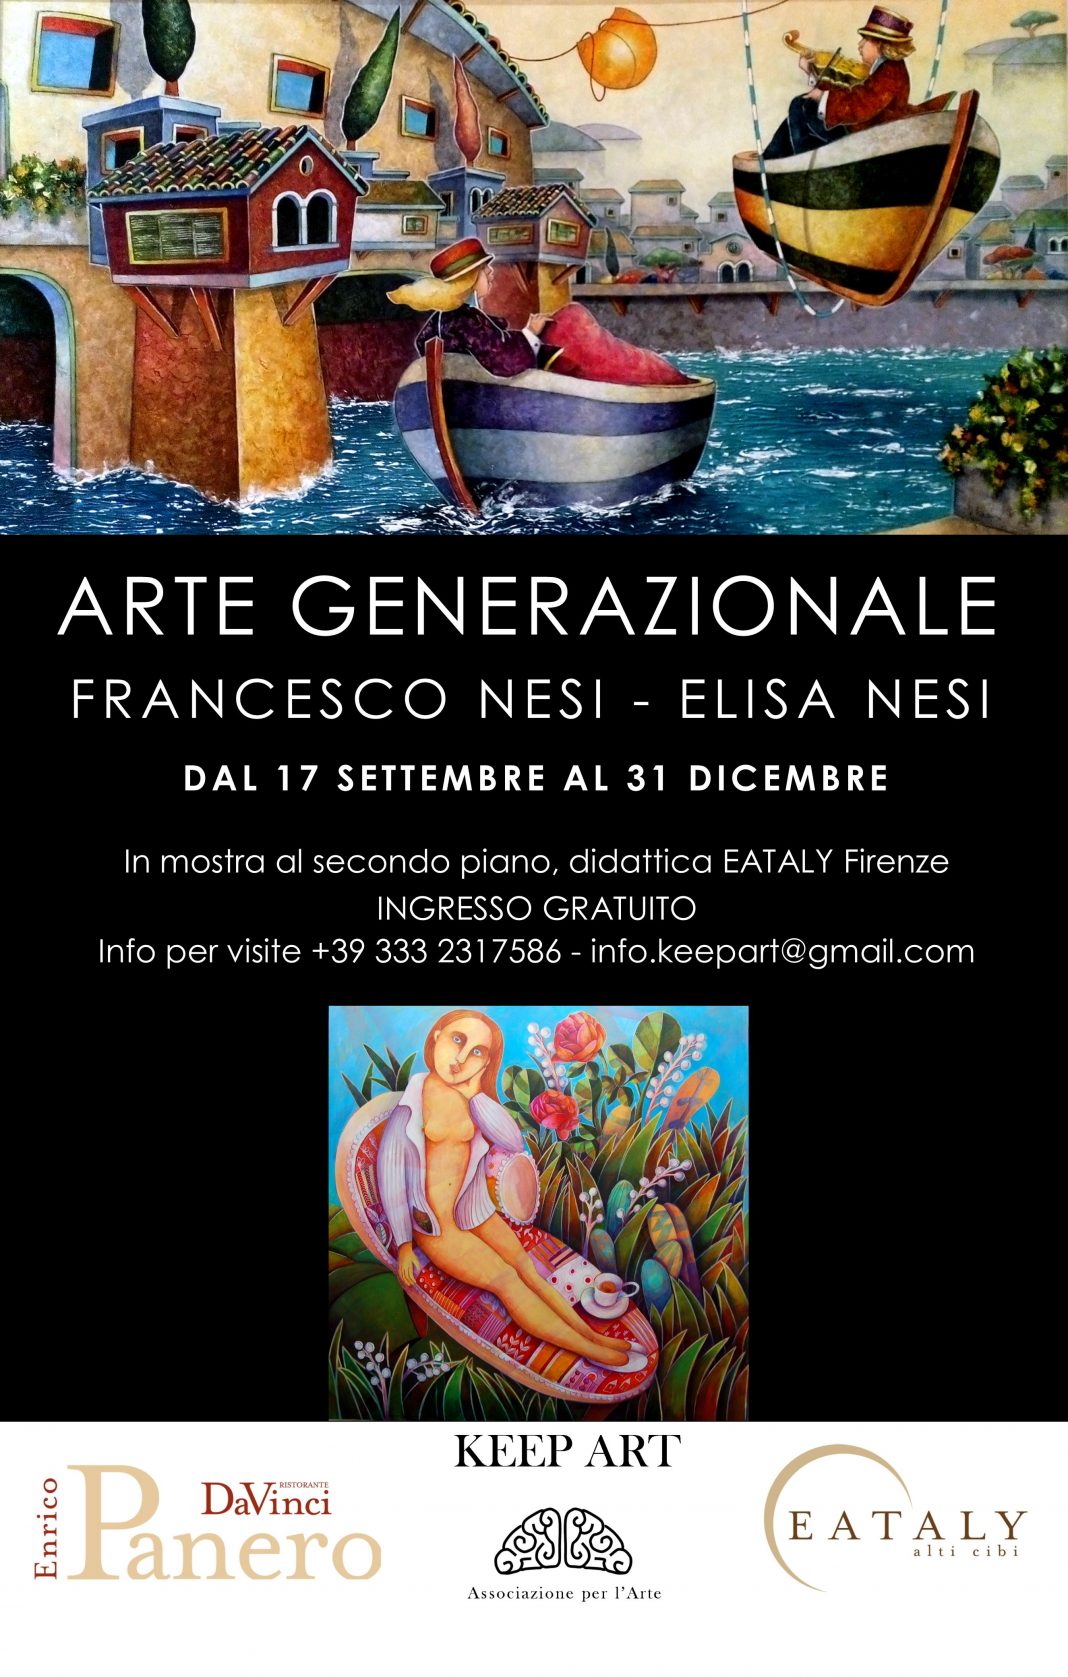 Francesco Nesi / Elisa Nesi – Arte generazionalehttps://www.exibart.com/repository/media/eventi/2015/09/francesco-nesi-elisa-nesi-8211-arte-generazionale-1068x1677.jpg